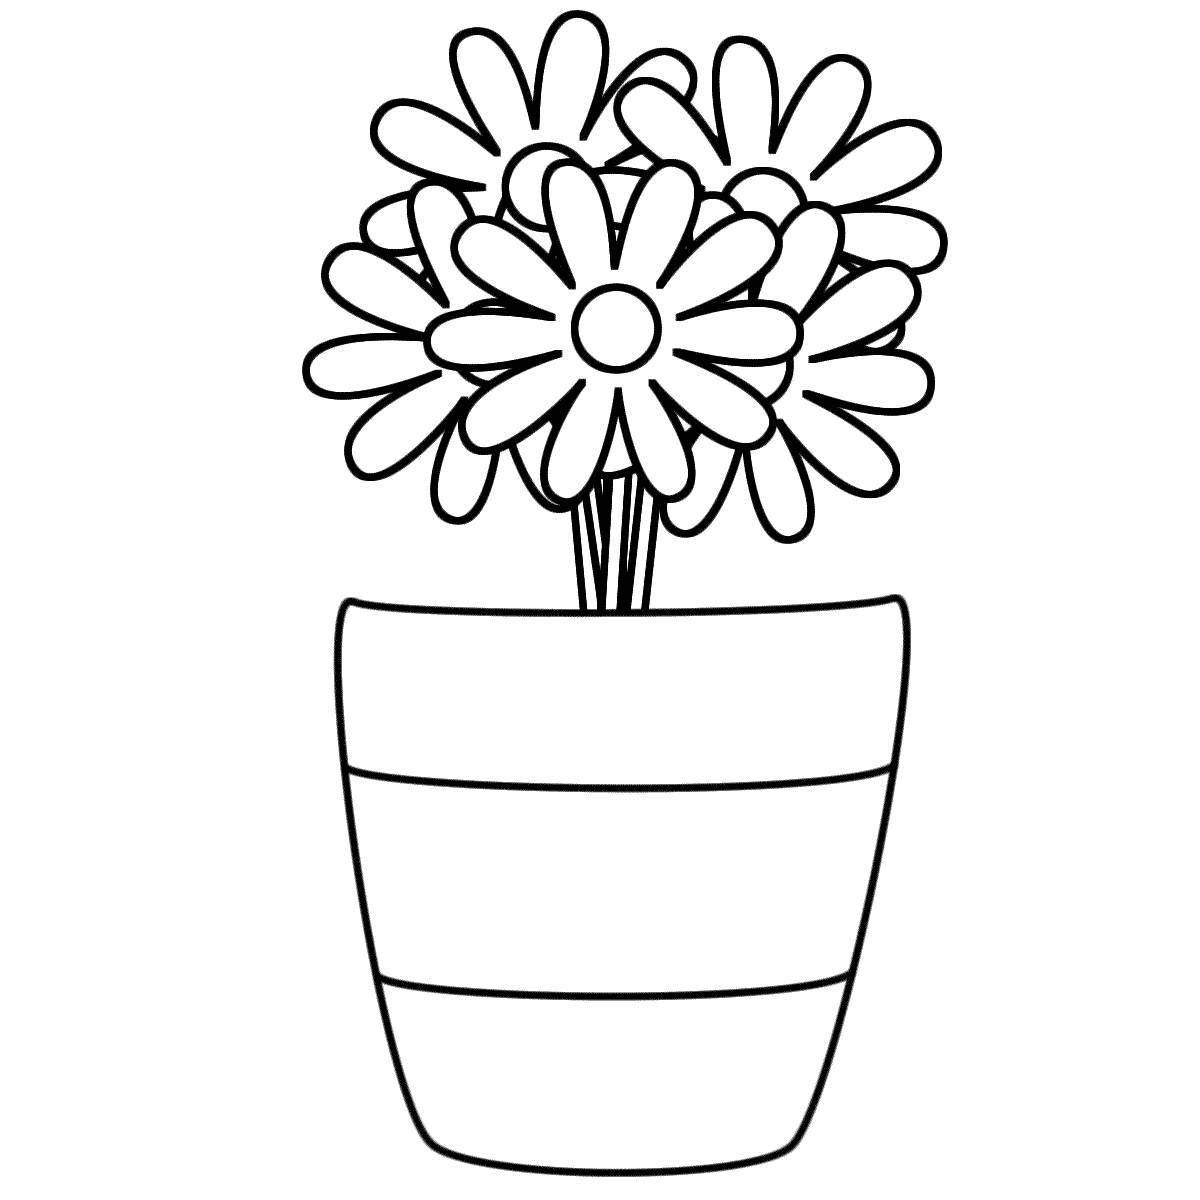 Joyful flower vase for children aged 8-9